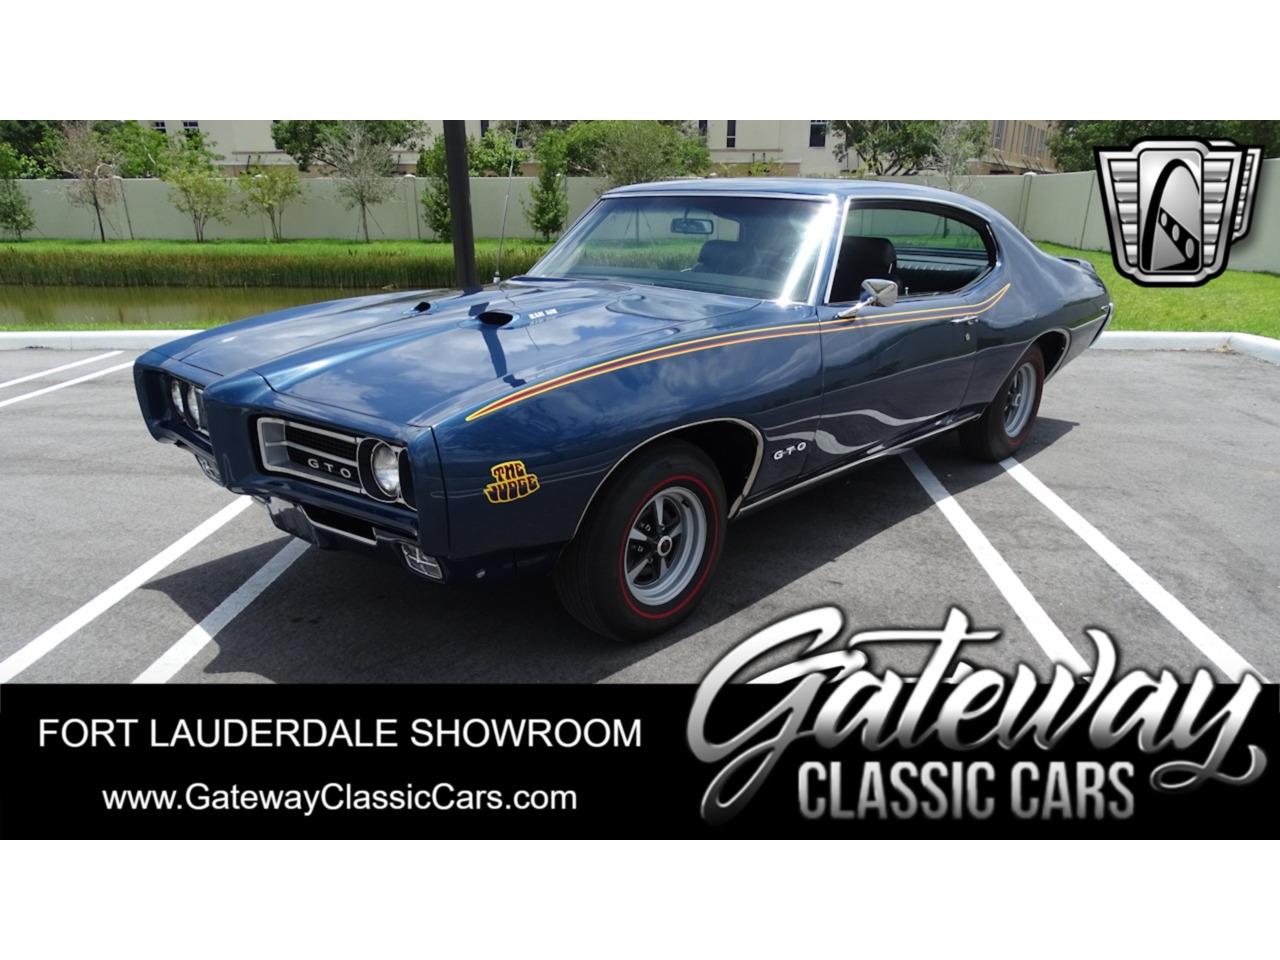 For Sale: 1969 Pontiac GTO in O'Fallon, Illinois for sale in O Fallon, IL